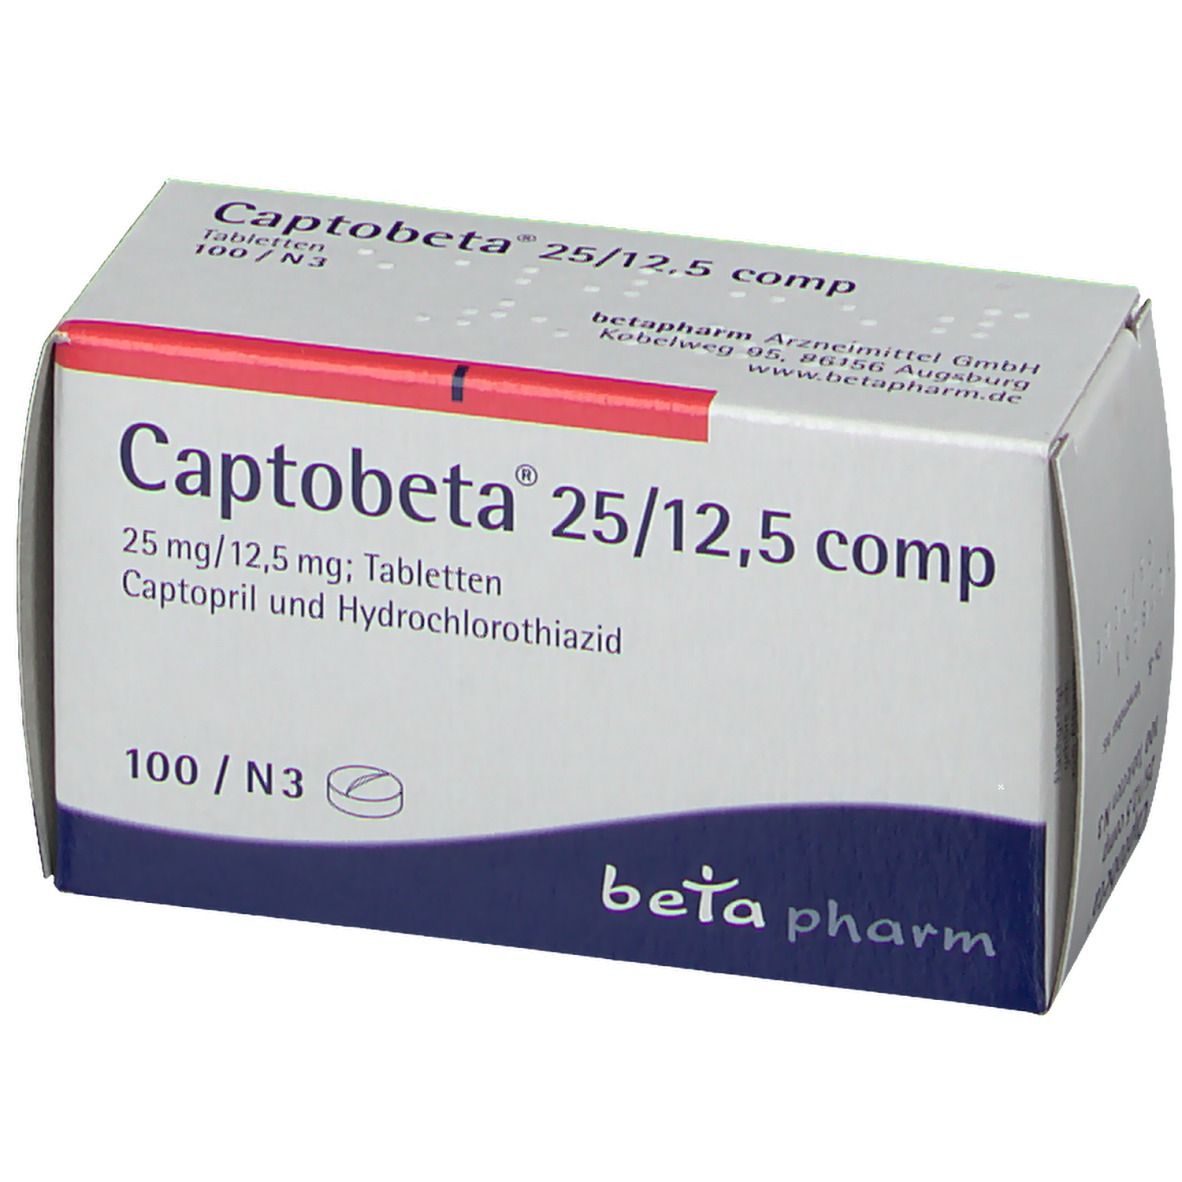 Captobeta® 25/12,5 comp